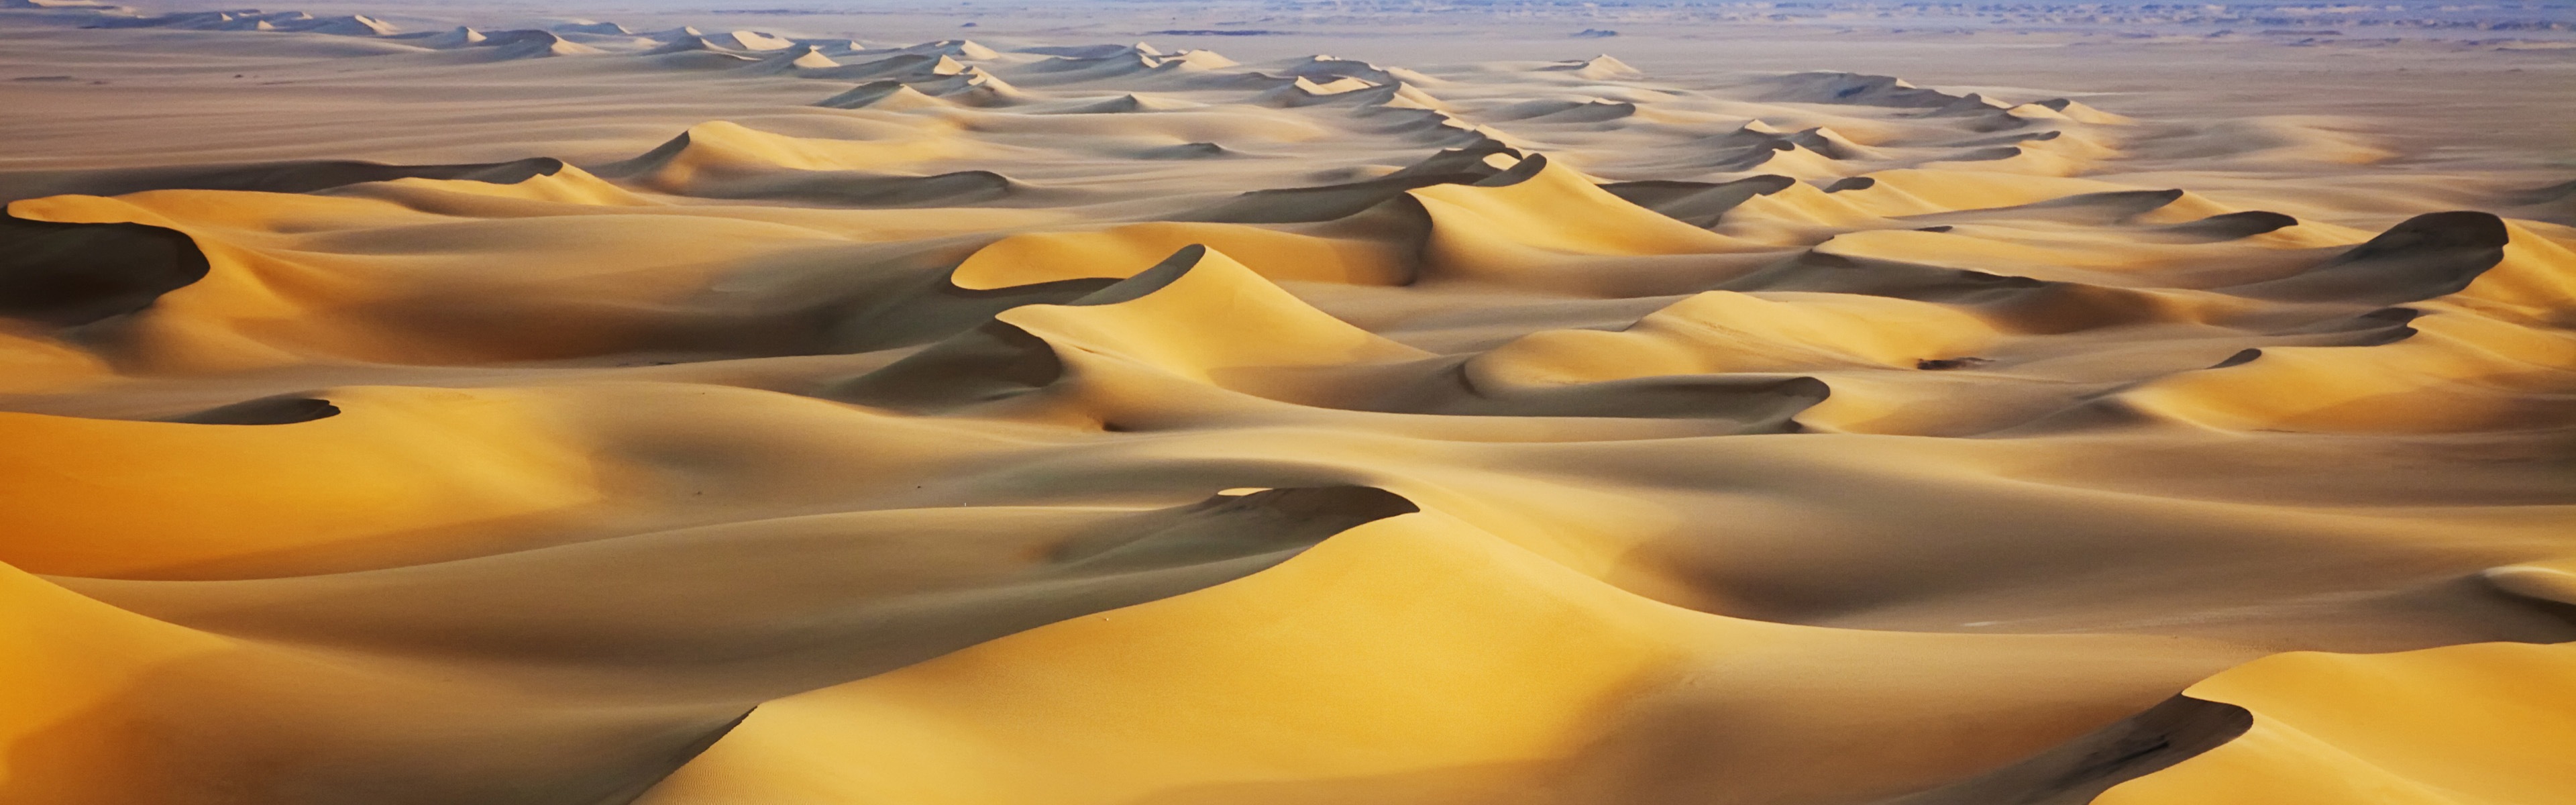 뜨겁고 건조한 사막, 윈도우 8 파노라마 와이드 스크린 배경 화면 #4 - 3840x1200